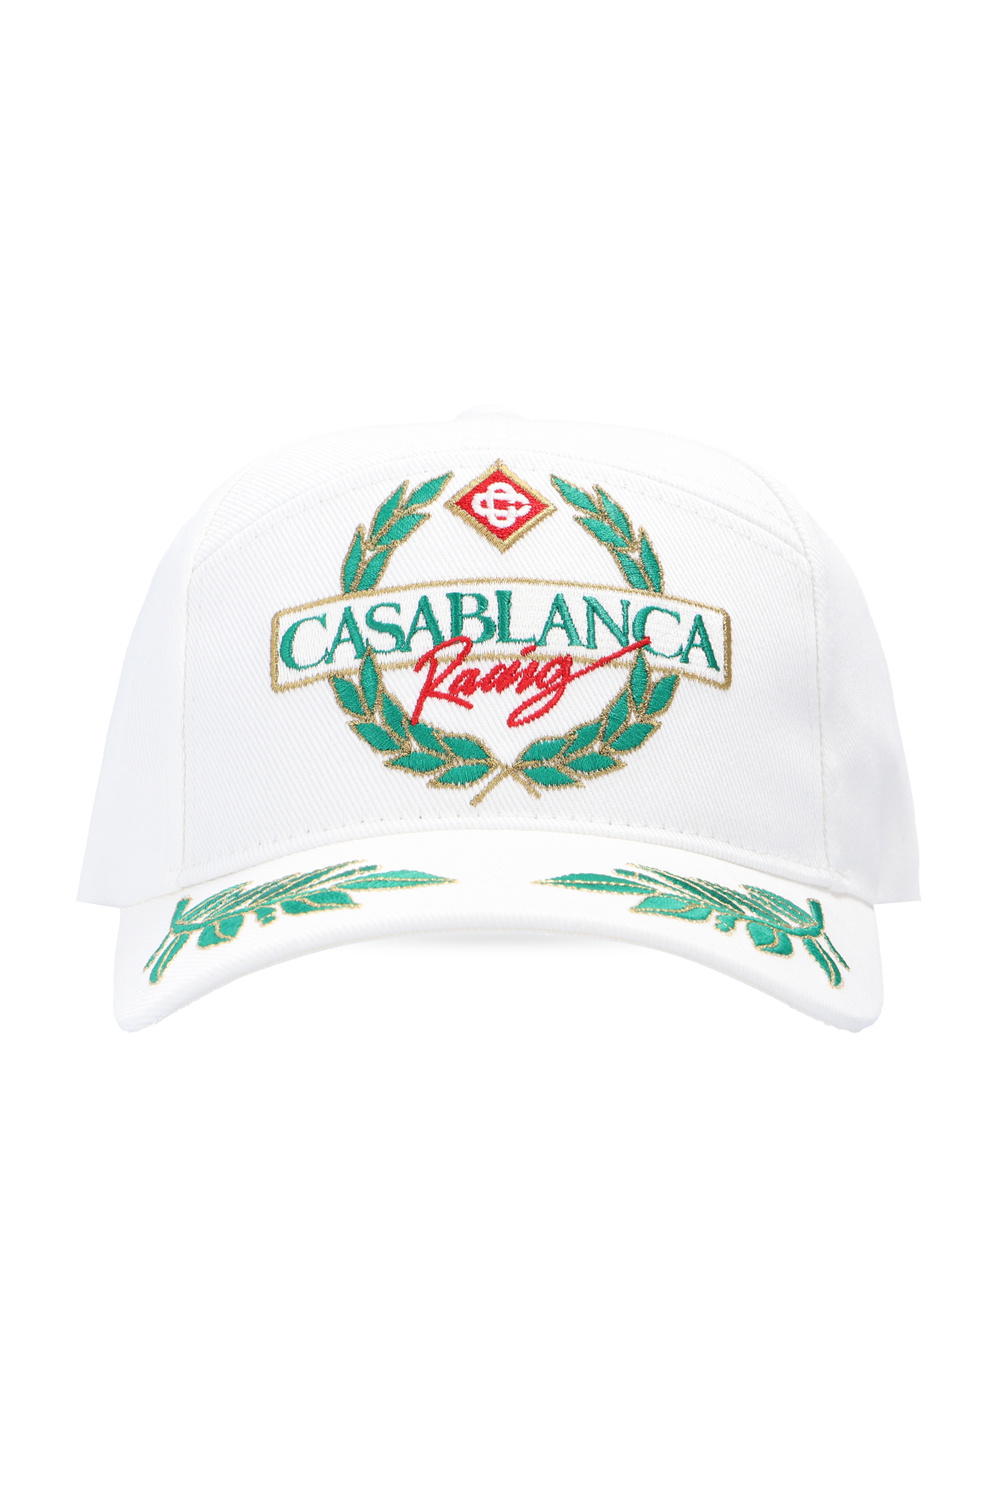 Casablanca Off White / 61 - XL